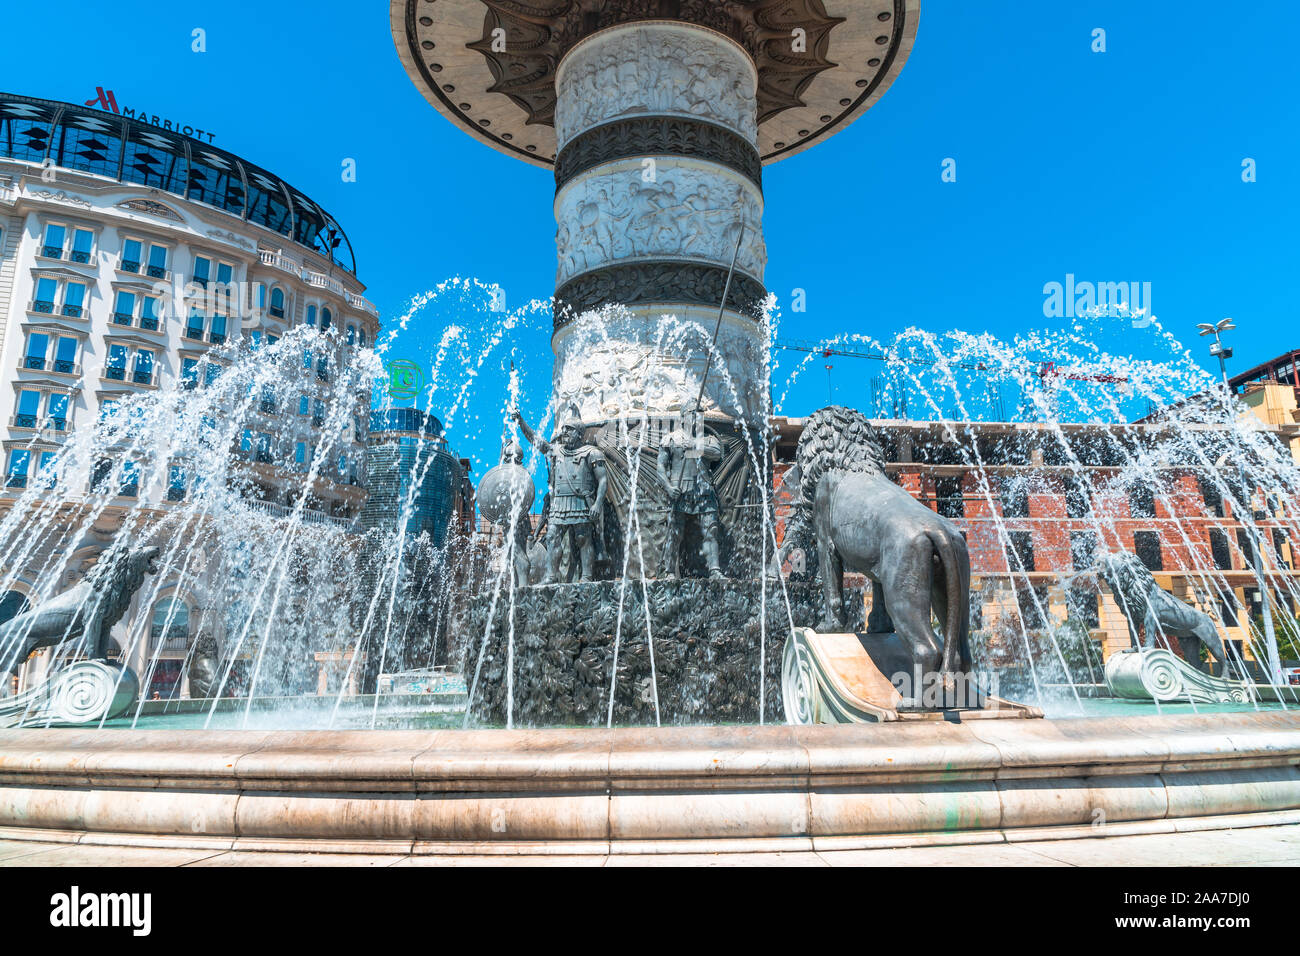 SKOPJE, MACEDONIA NORD - 8 agosto 2019 : centro città di Skopje con sculture e edifici. A Skopje è la città capitale della Macedonia. Foto Stock